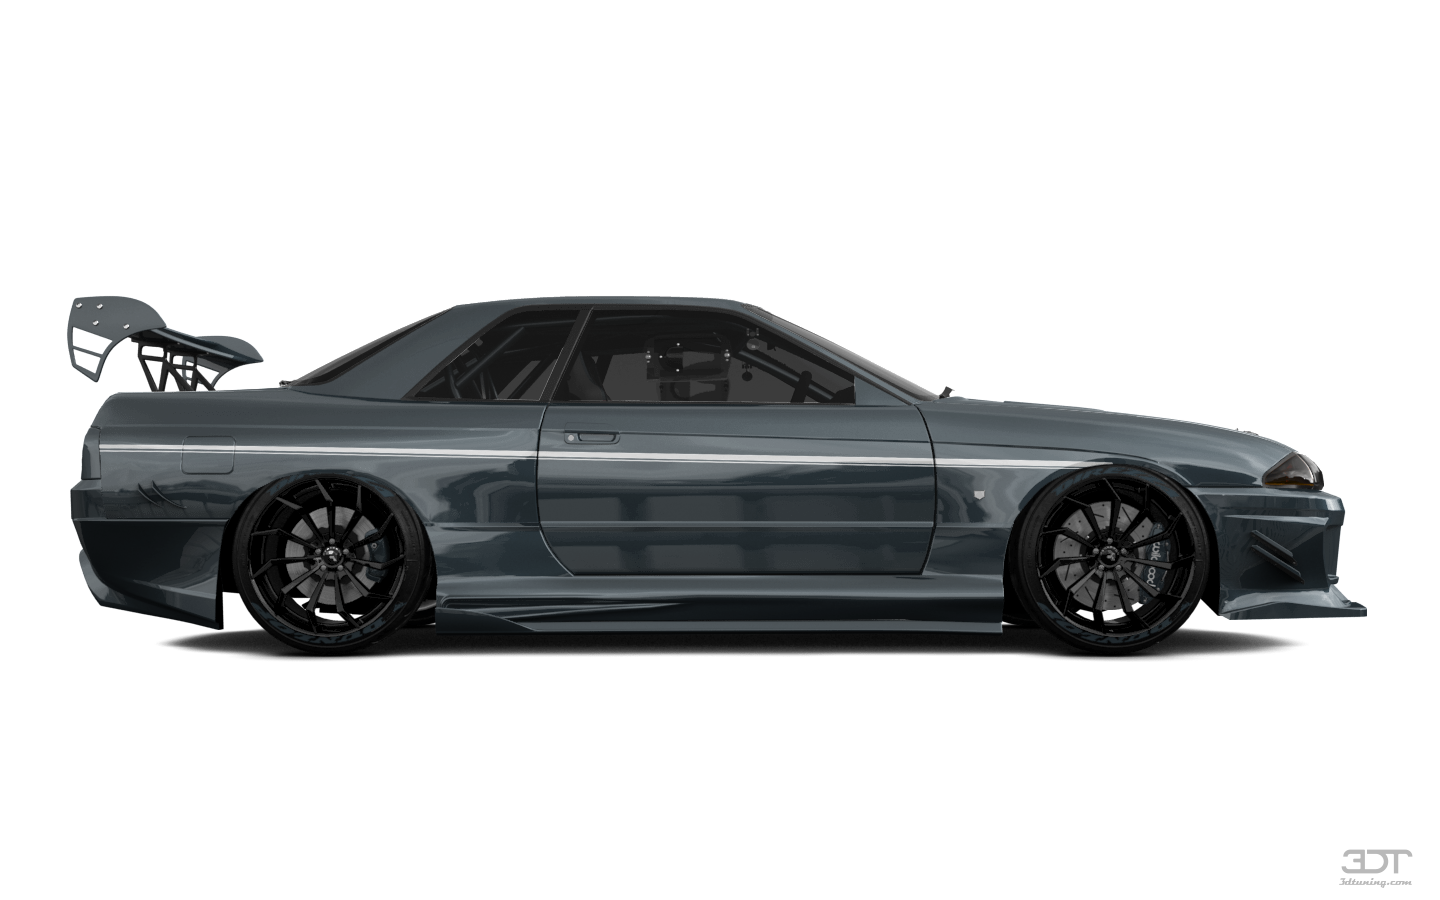 Nissan Skyline GT-R 2 Door Coupe 1989